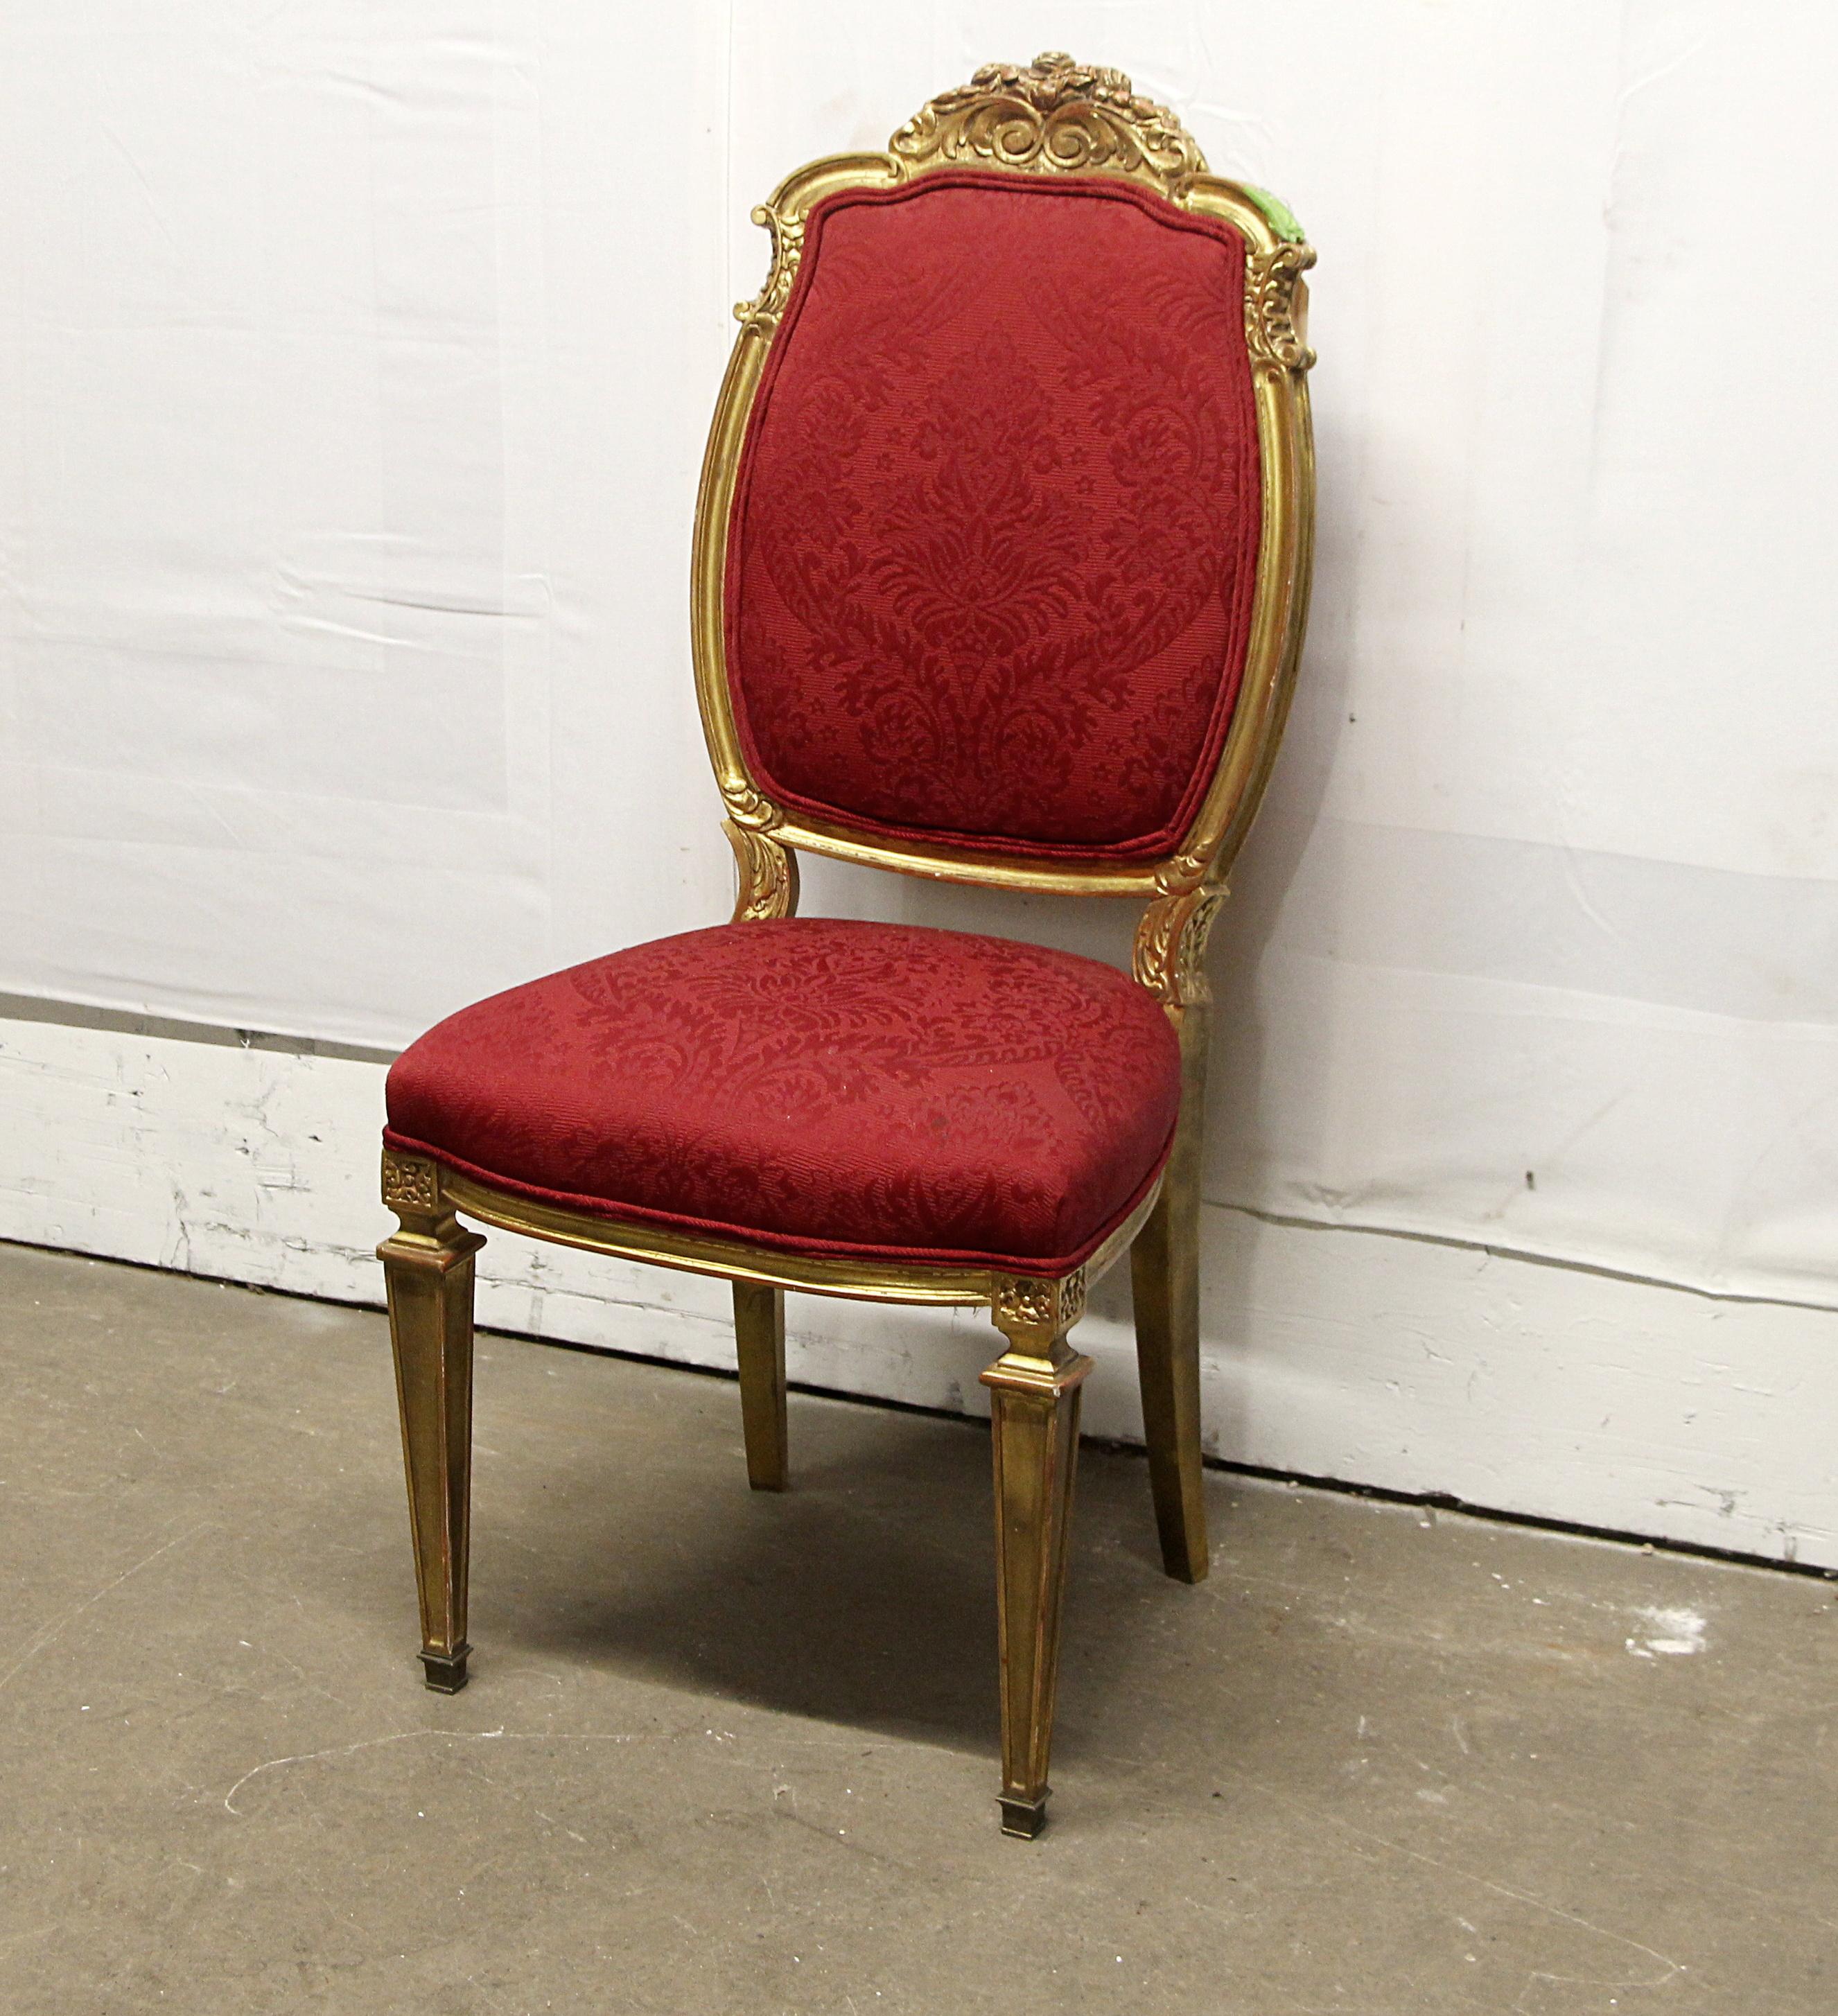 Französischer Stuhl im Stil der 1920er Jahre mit reichem, rotem, blumengemustertem Bezug und einem geschnitzten, verzierten und vergoldeten Holzrahmen. Es gibt kleinere Abnutzungserscheinungen durch Alter und Gebrauch. Bitte beachten Sie, dieser